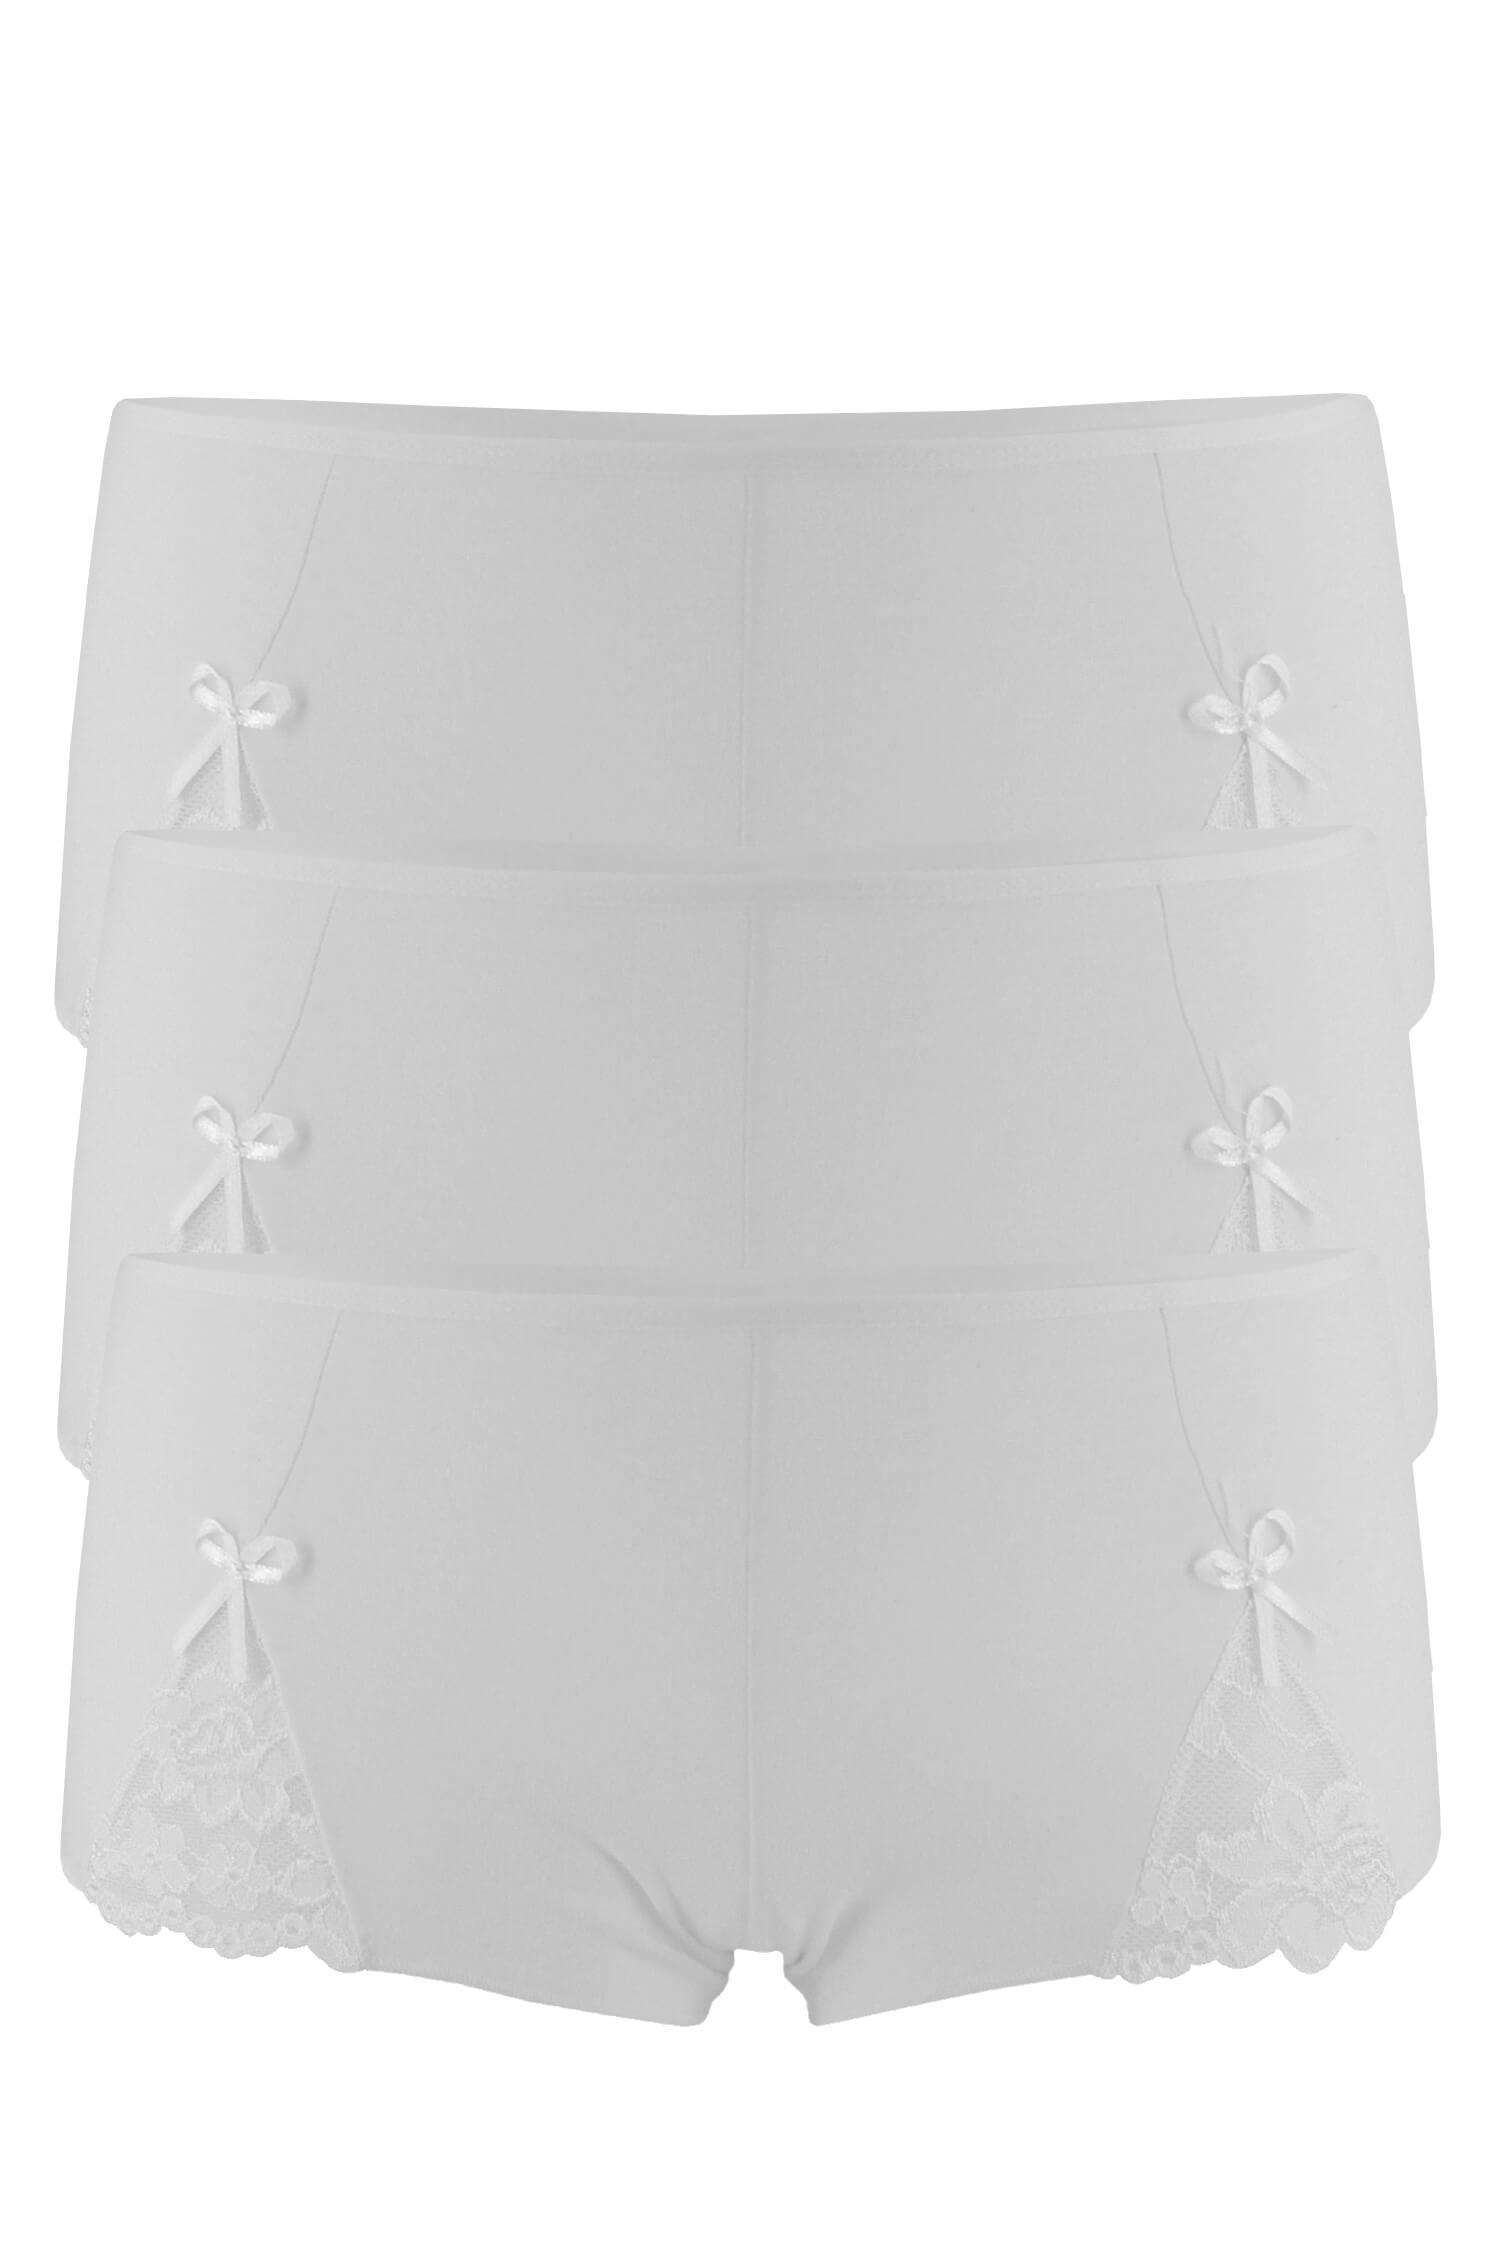 Jumba nohavičkové kalhotky bavlna C-384 - 3 bal XL bílá